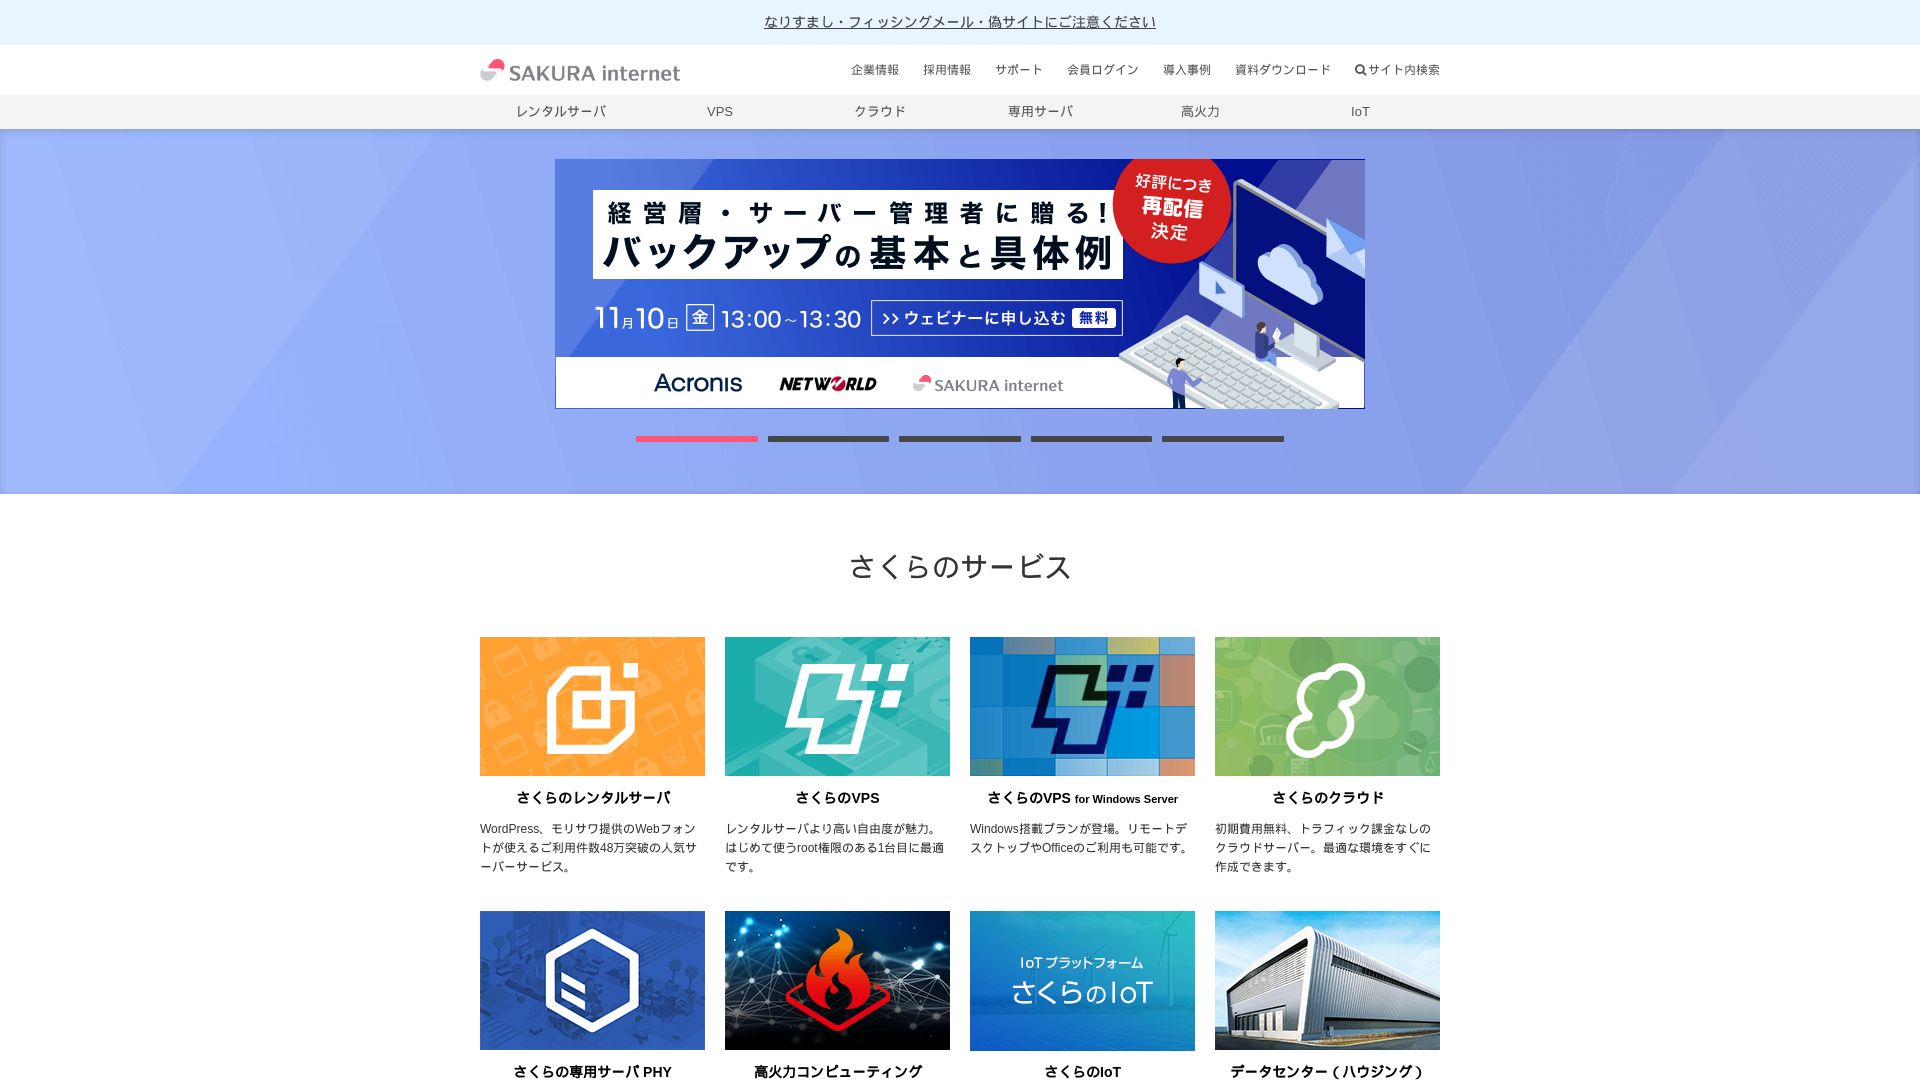 État du site web sakura.ad.jp est   EN LIGNE